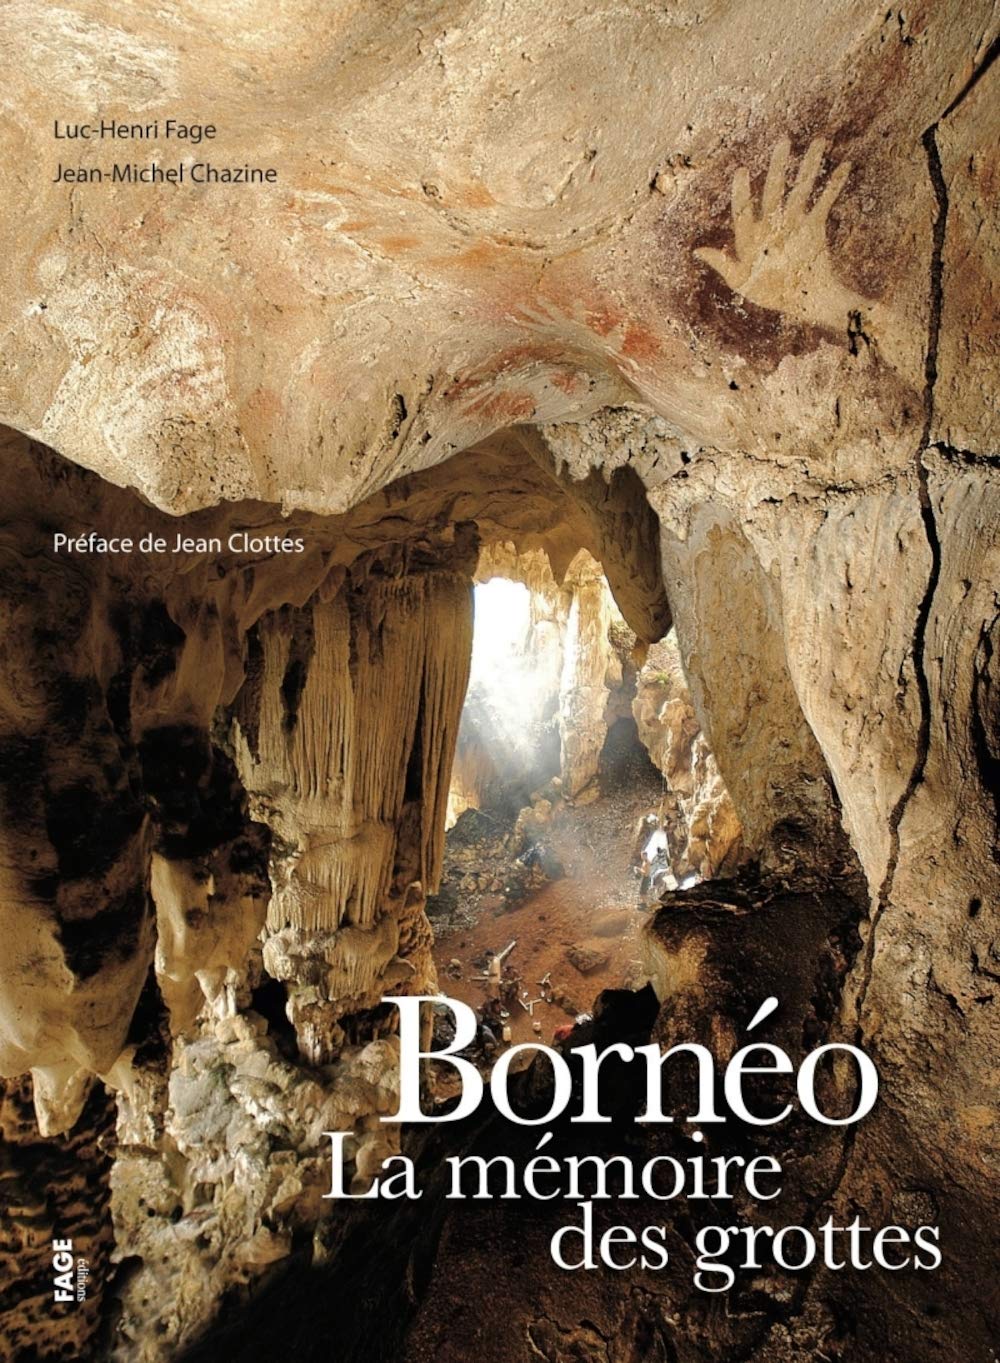 Bornéo, la mémoire des grottes